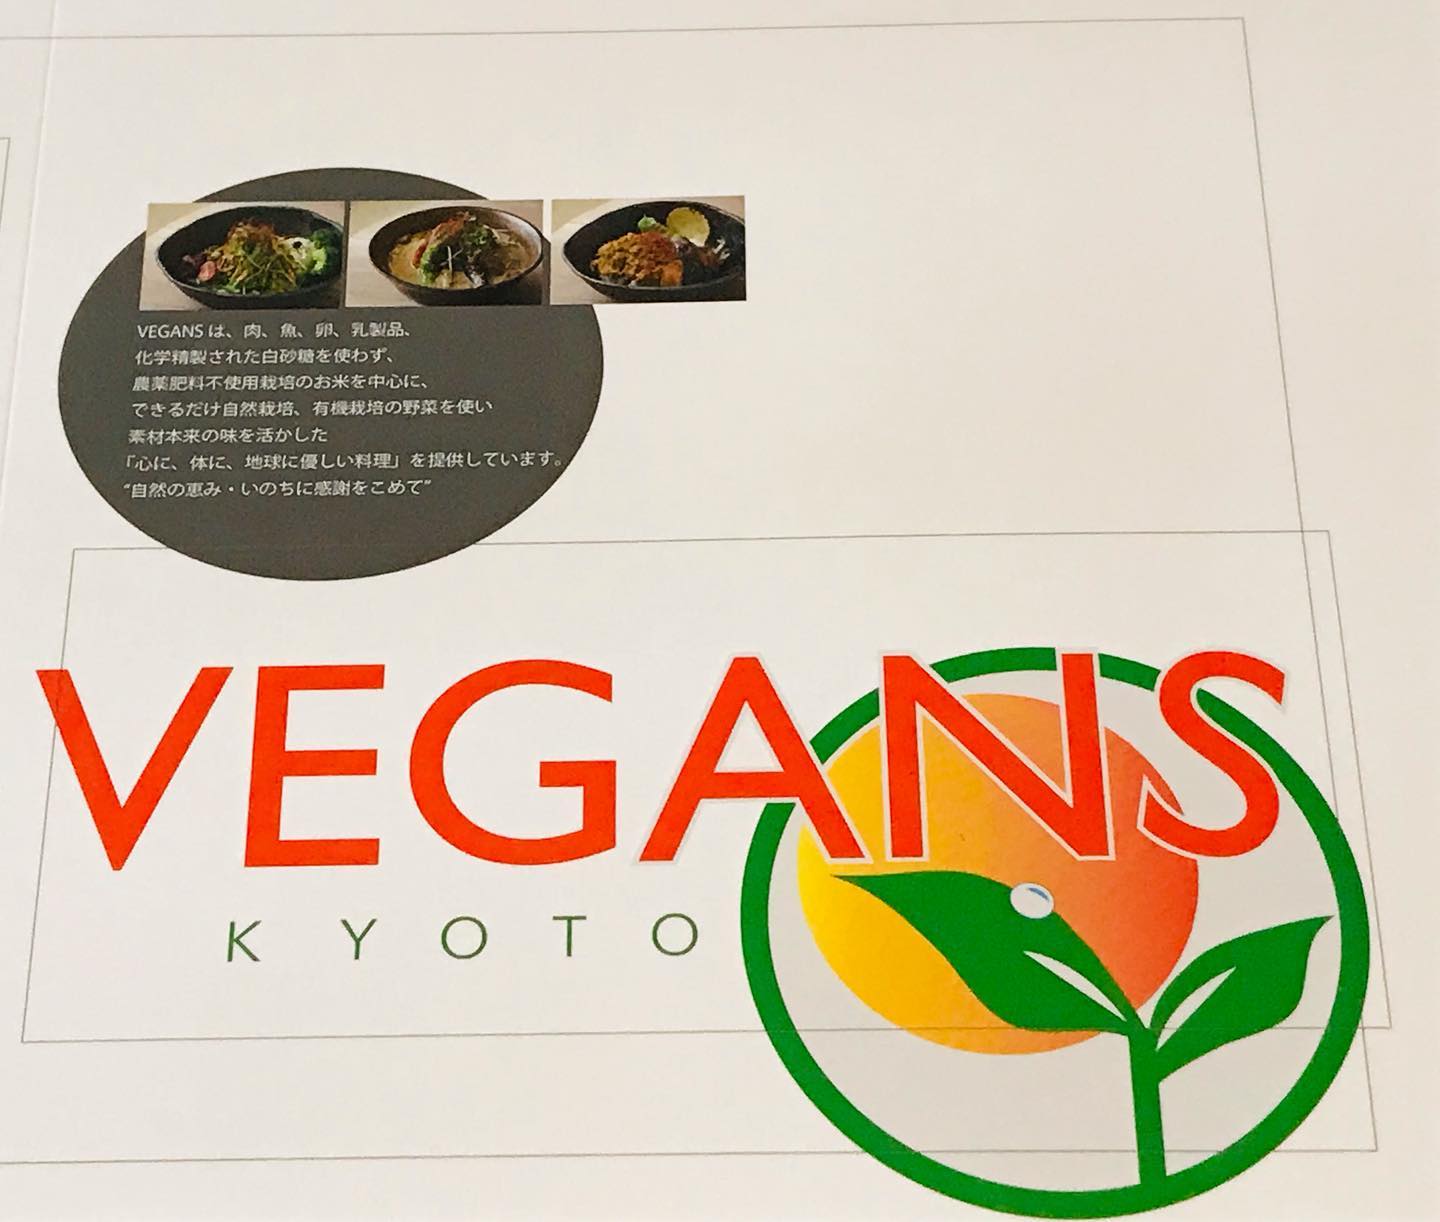 vegans kyotoのホームページを作成中です、あとしばらくお待ちください。